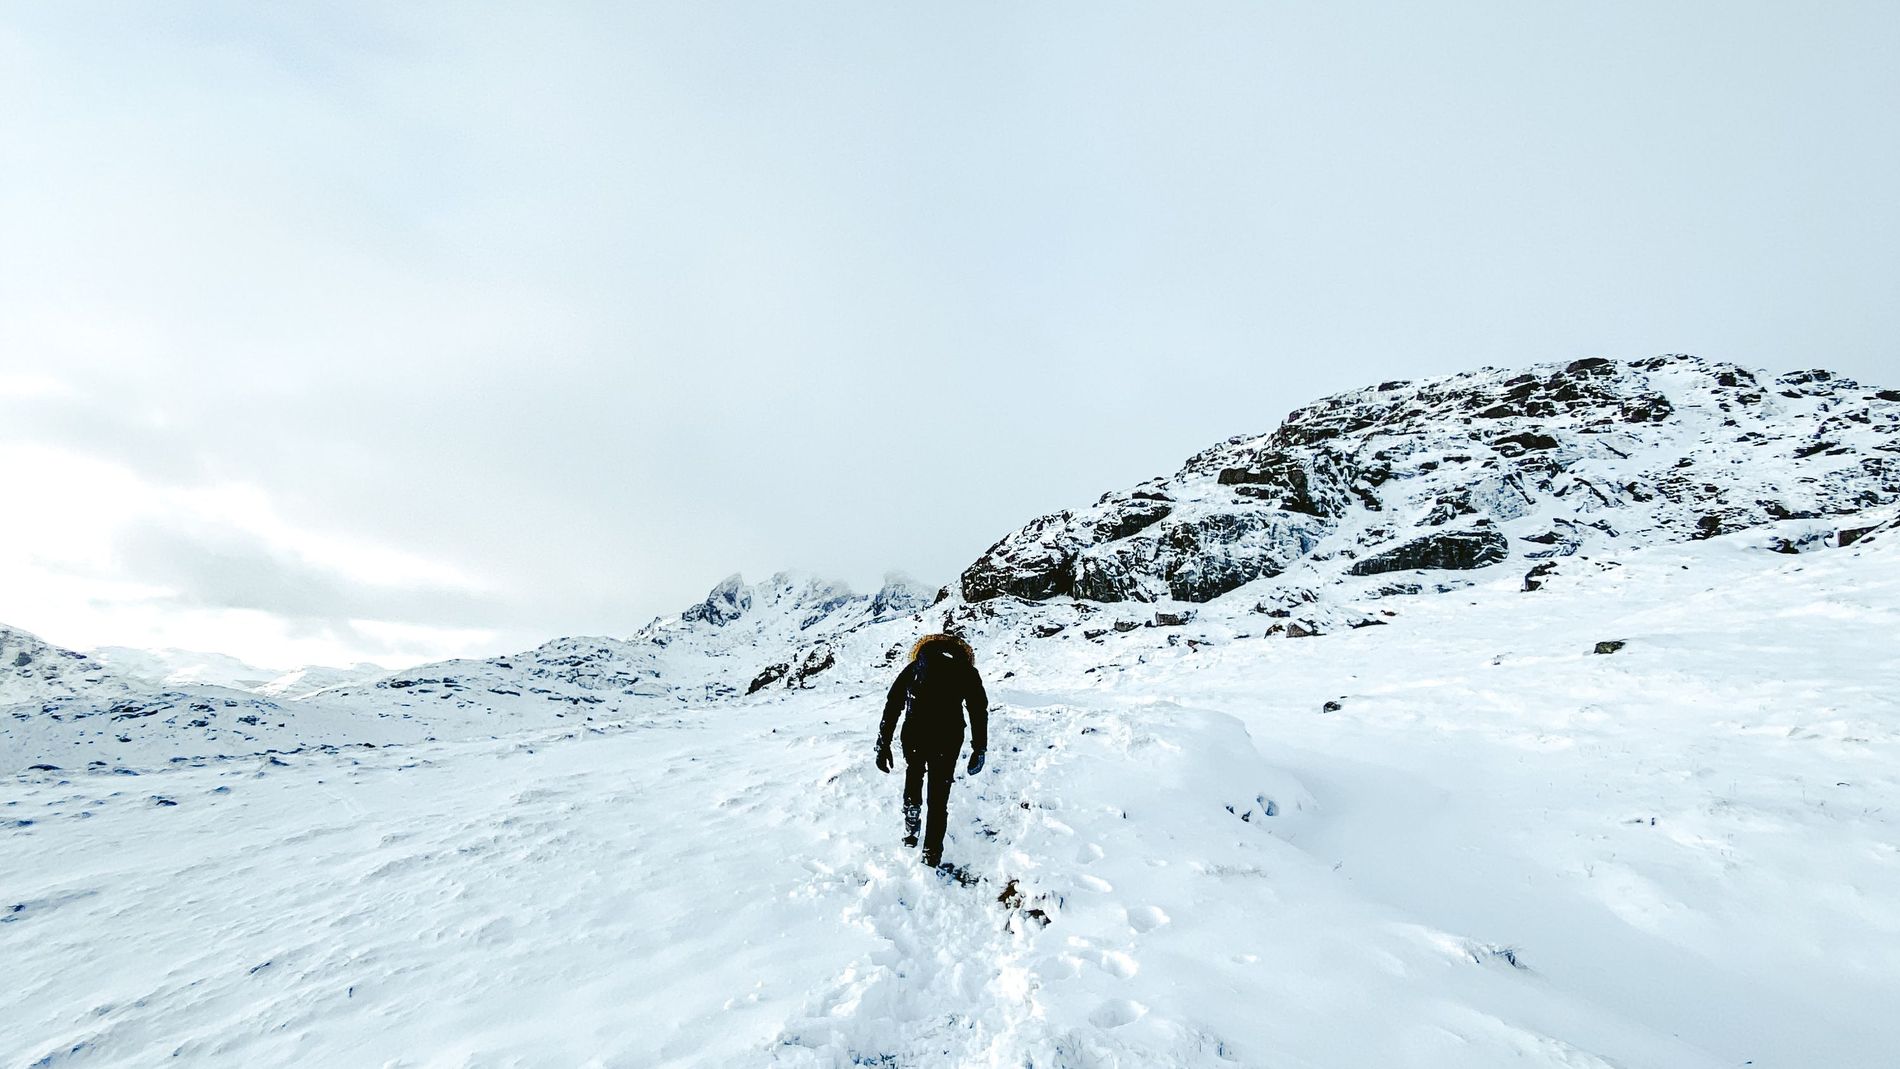 A person climbing a snowy mountain